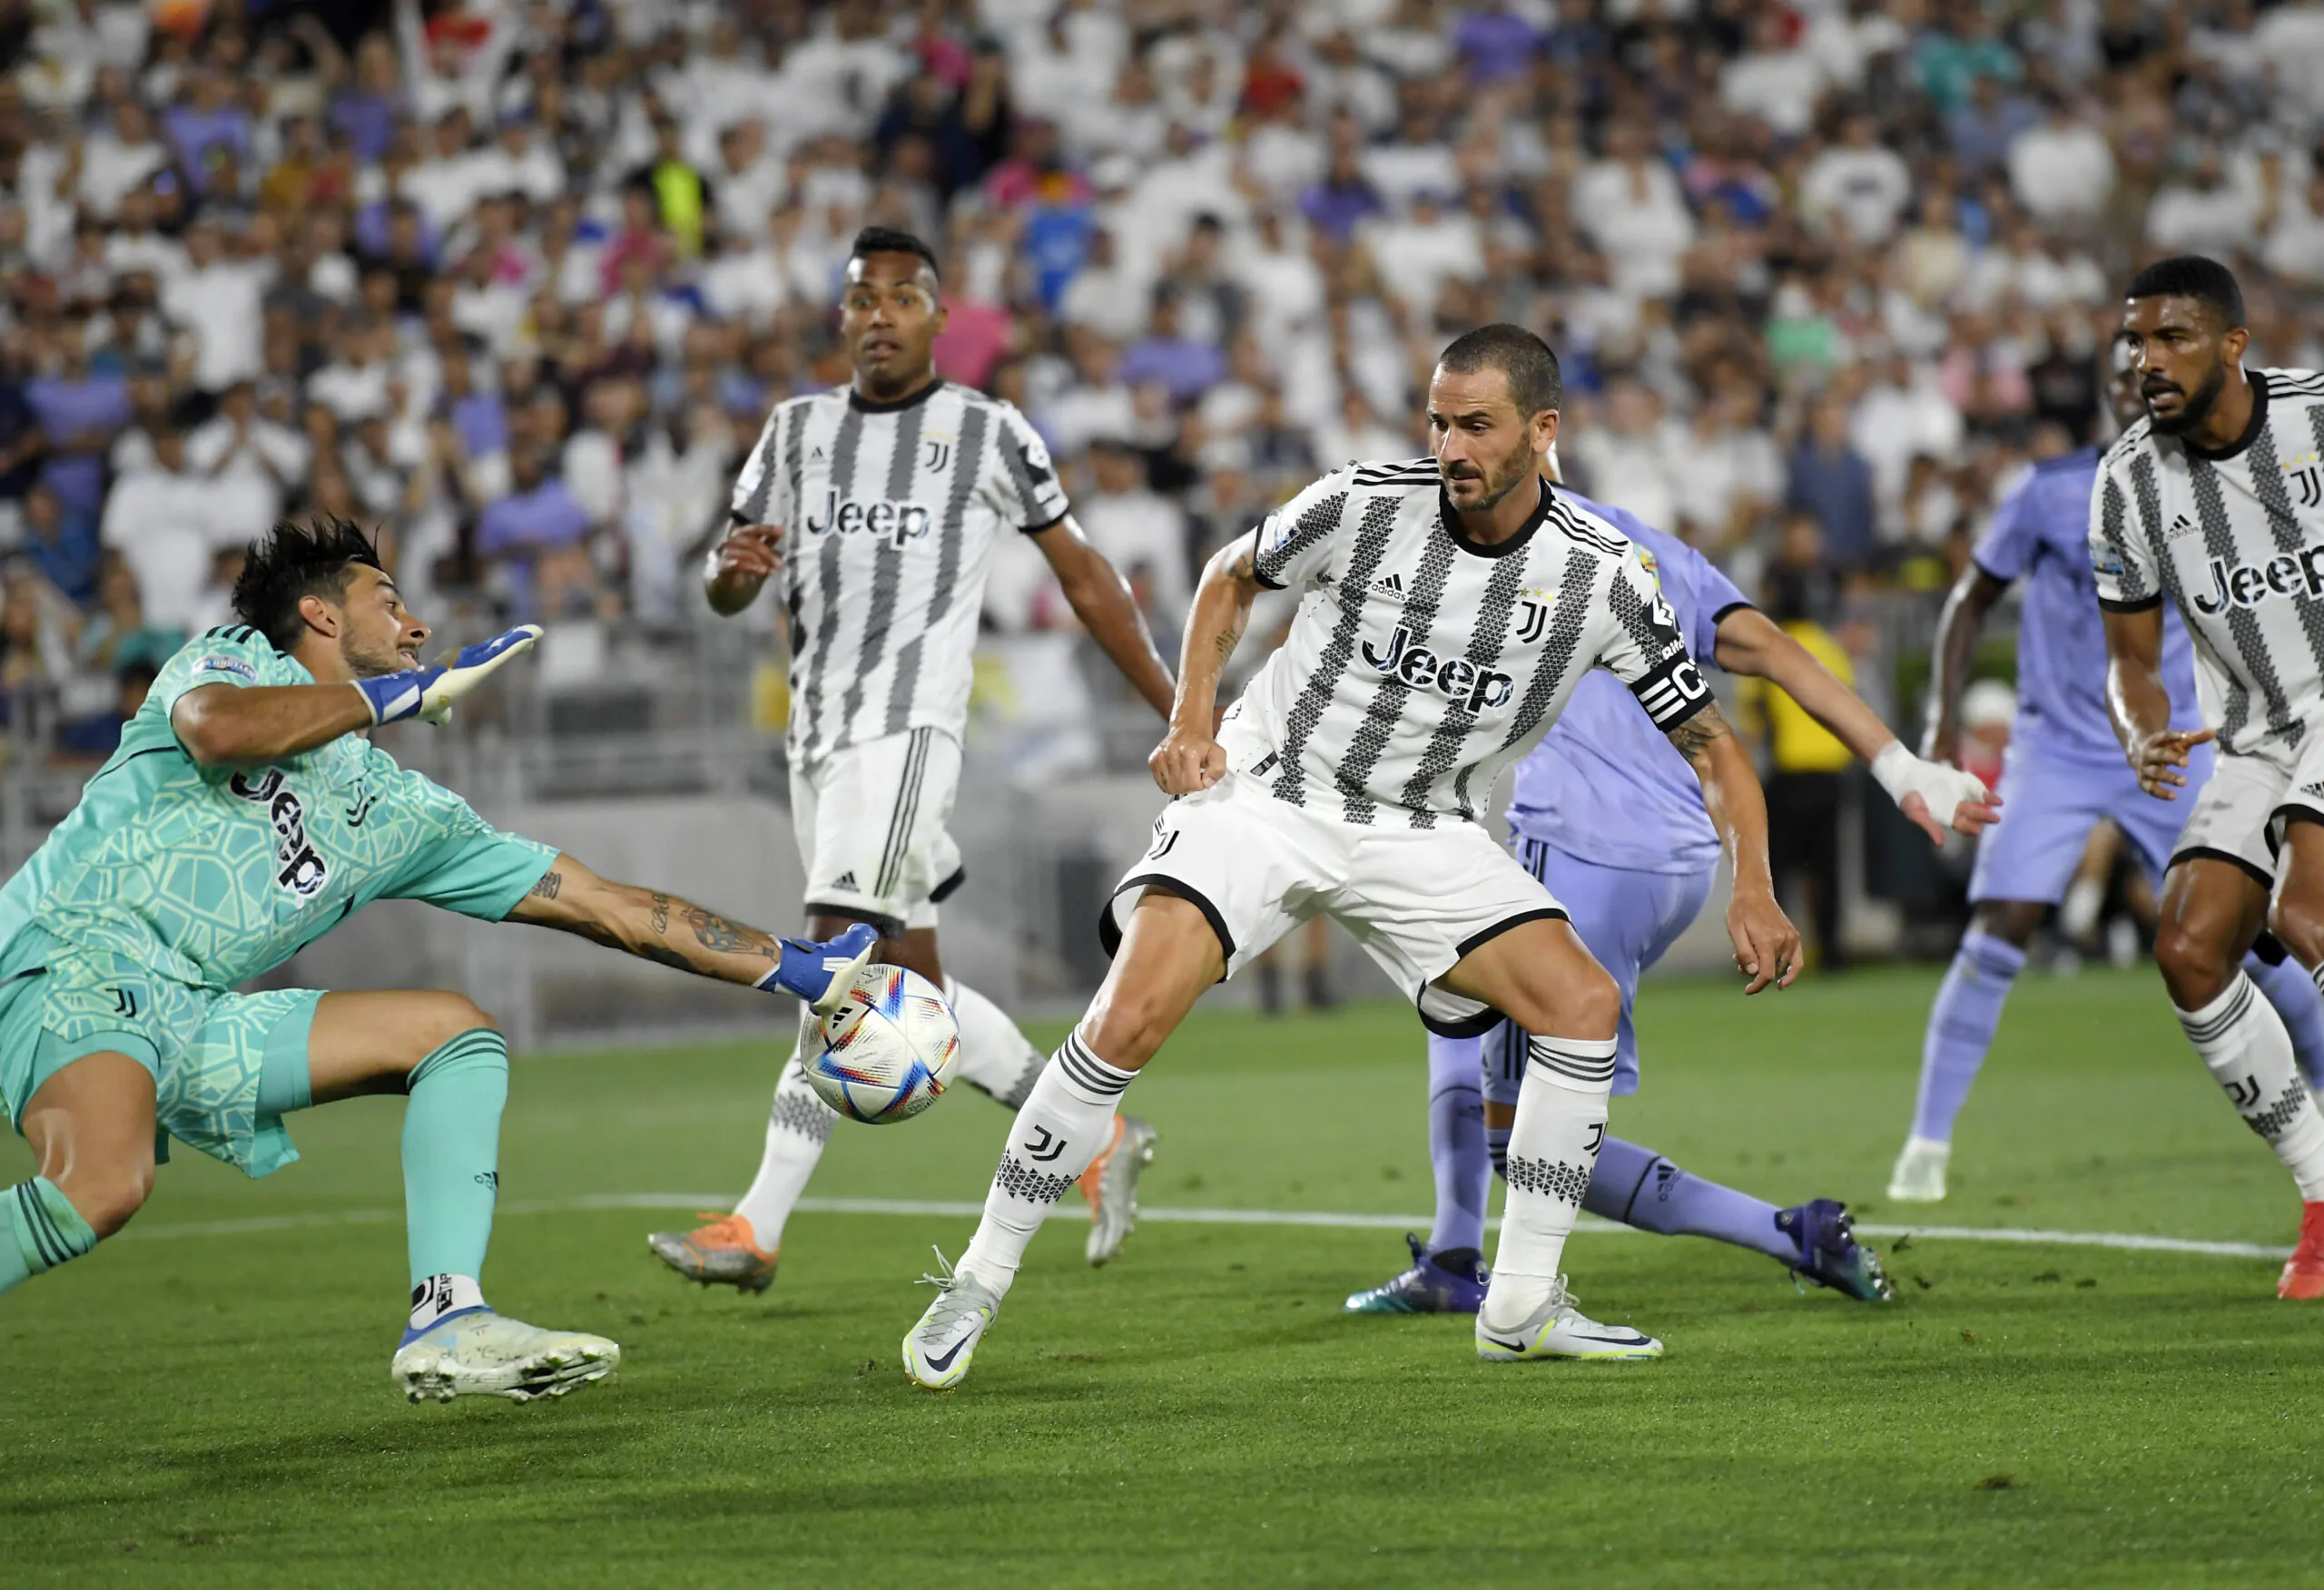 La rivelazione del giocatore della Juventus: “Stavo per smettere”